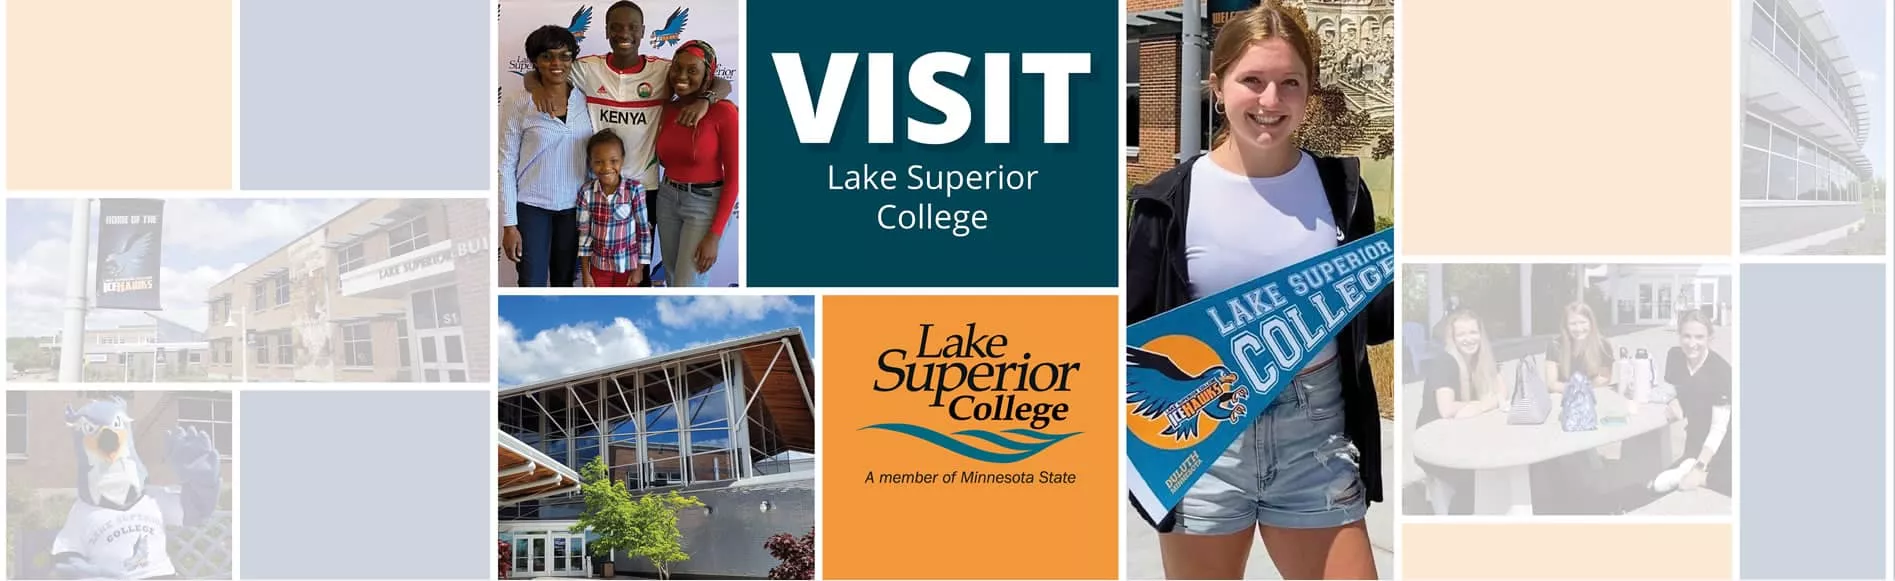 Visit Lake Superior College